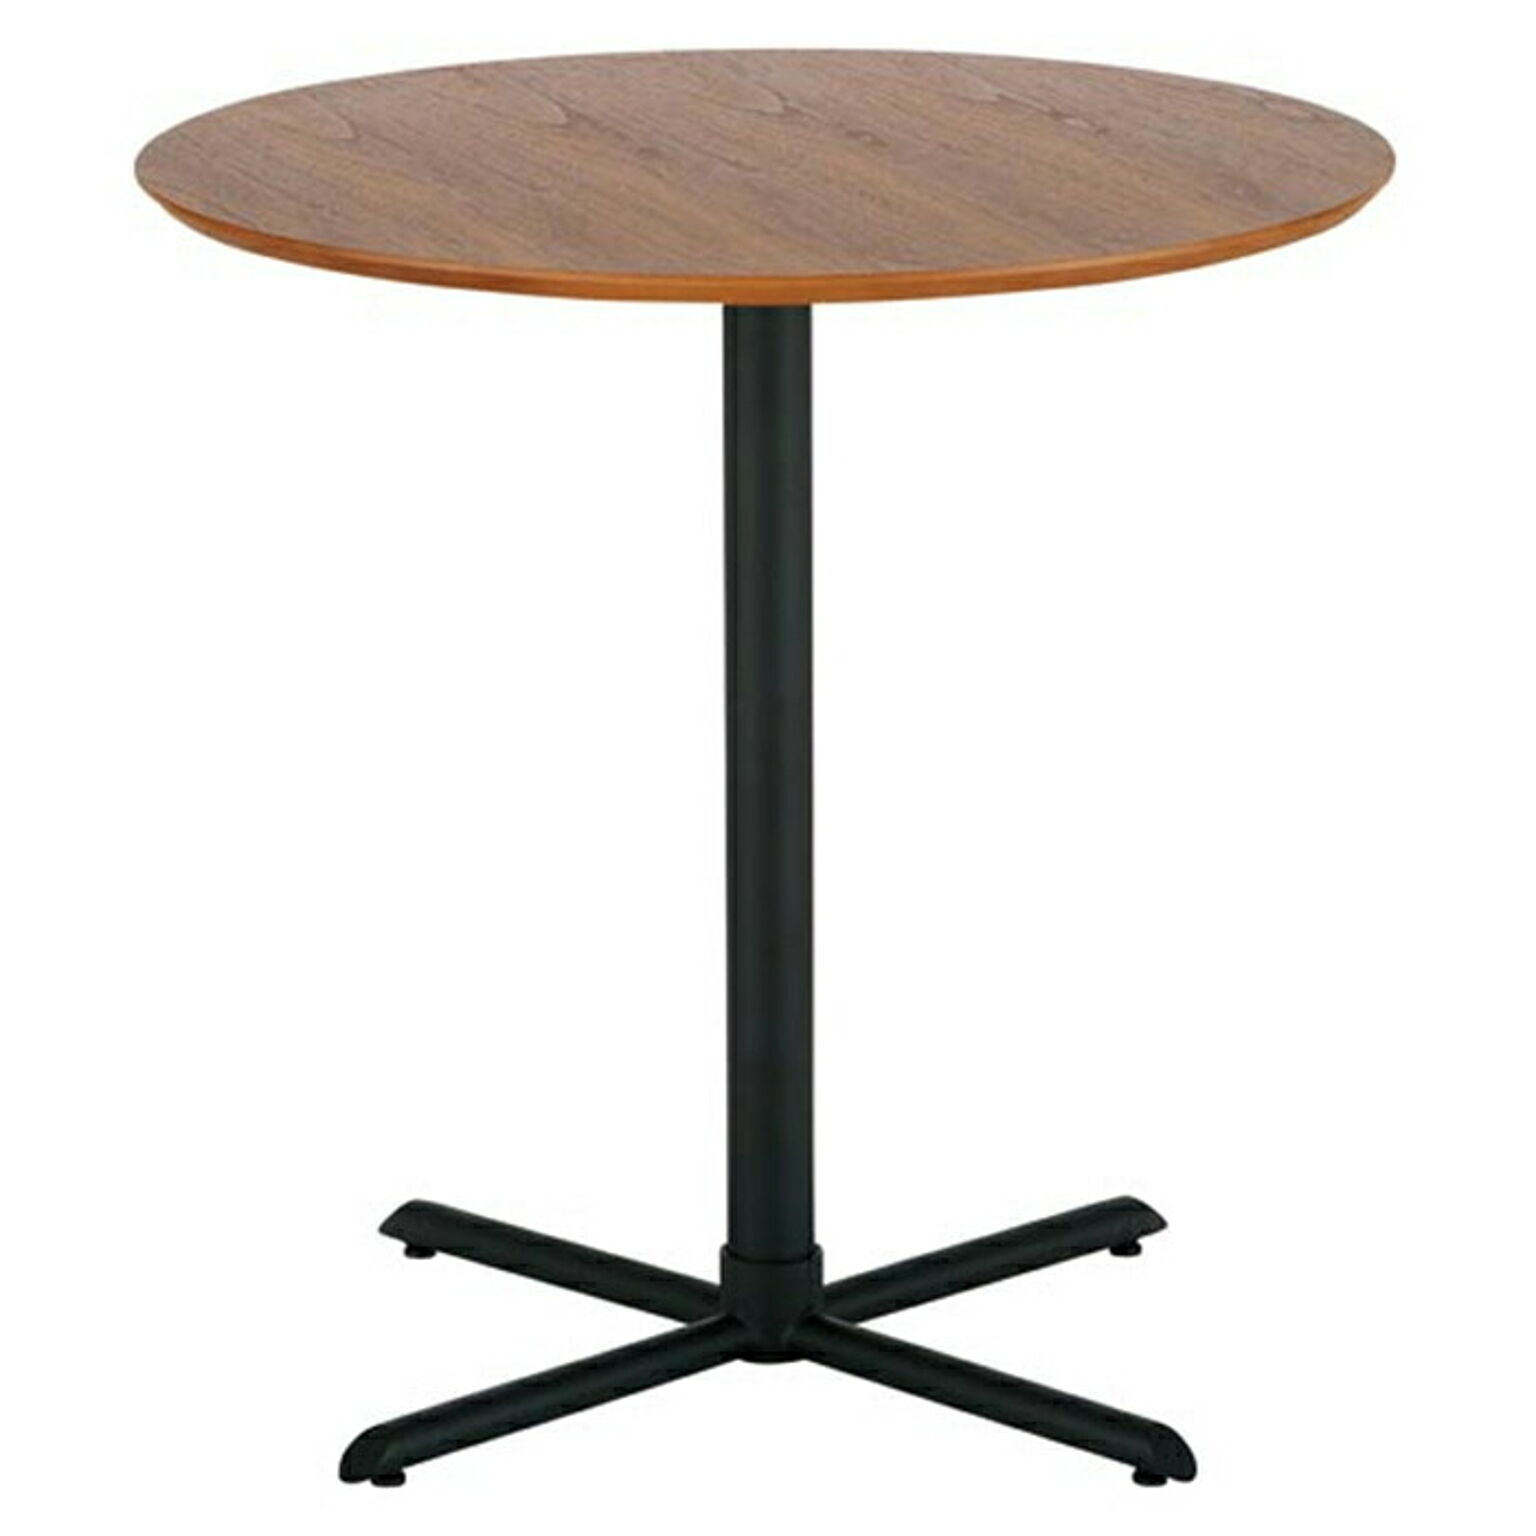 あずま工芸 カフェテーブル 組立式 幅650x奥行650x高さ700mm